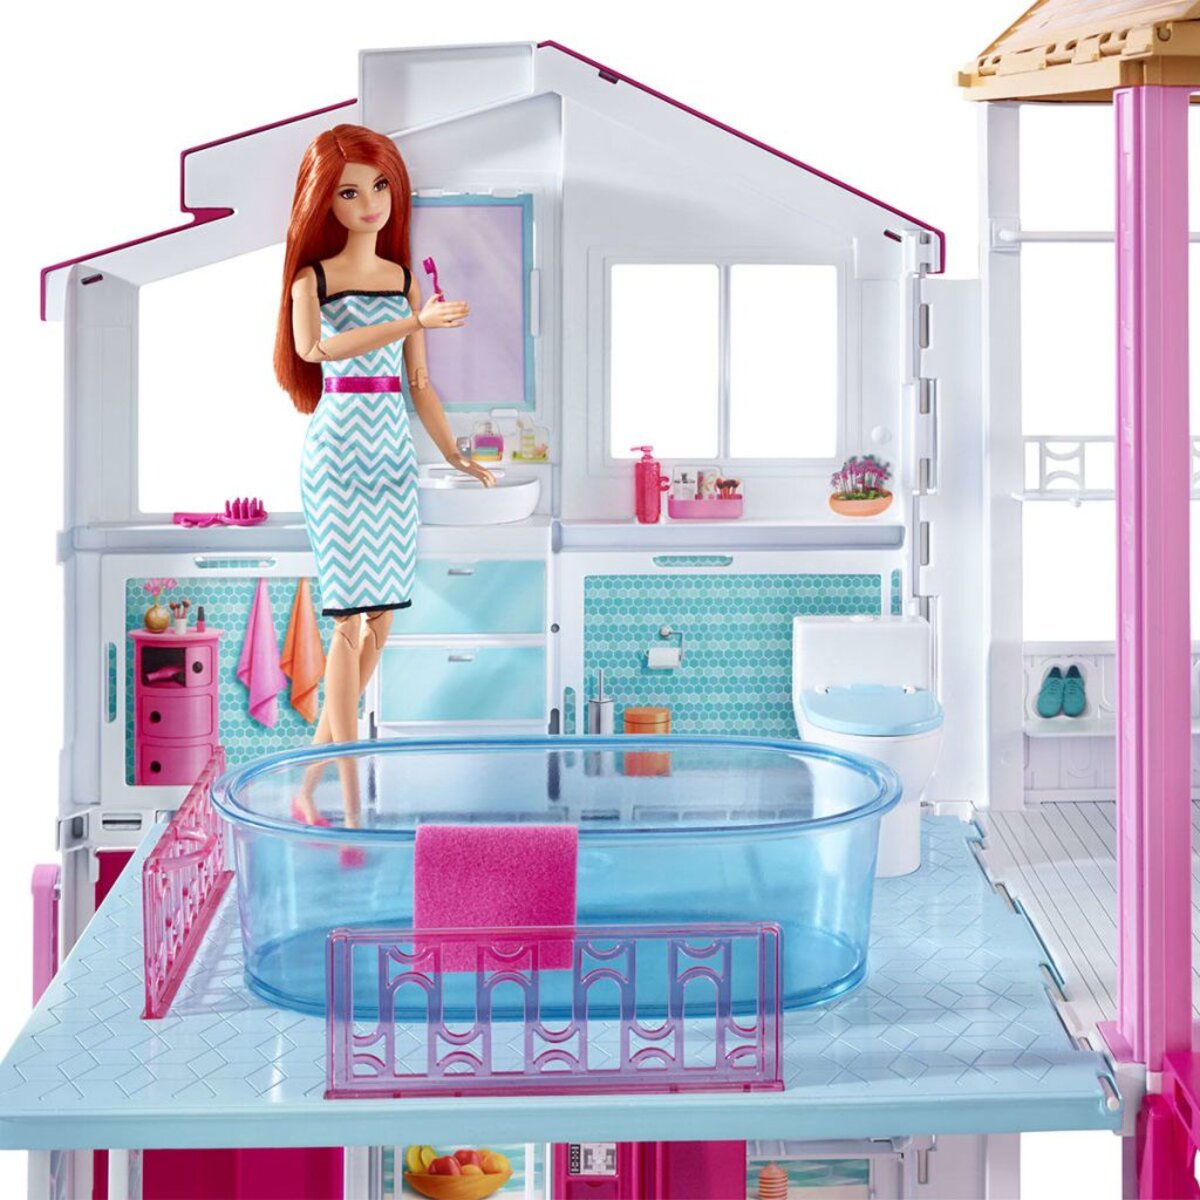 Barbie Malibu House -2 etages et 15 accessoires;